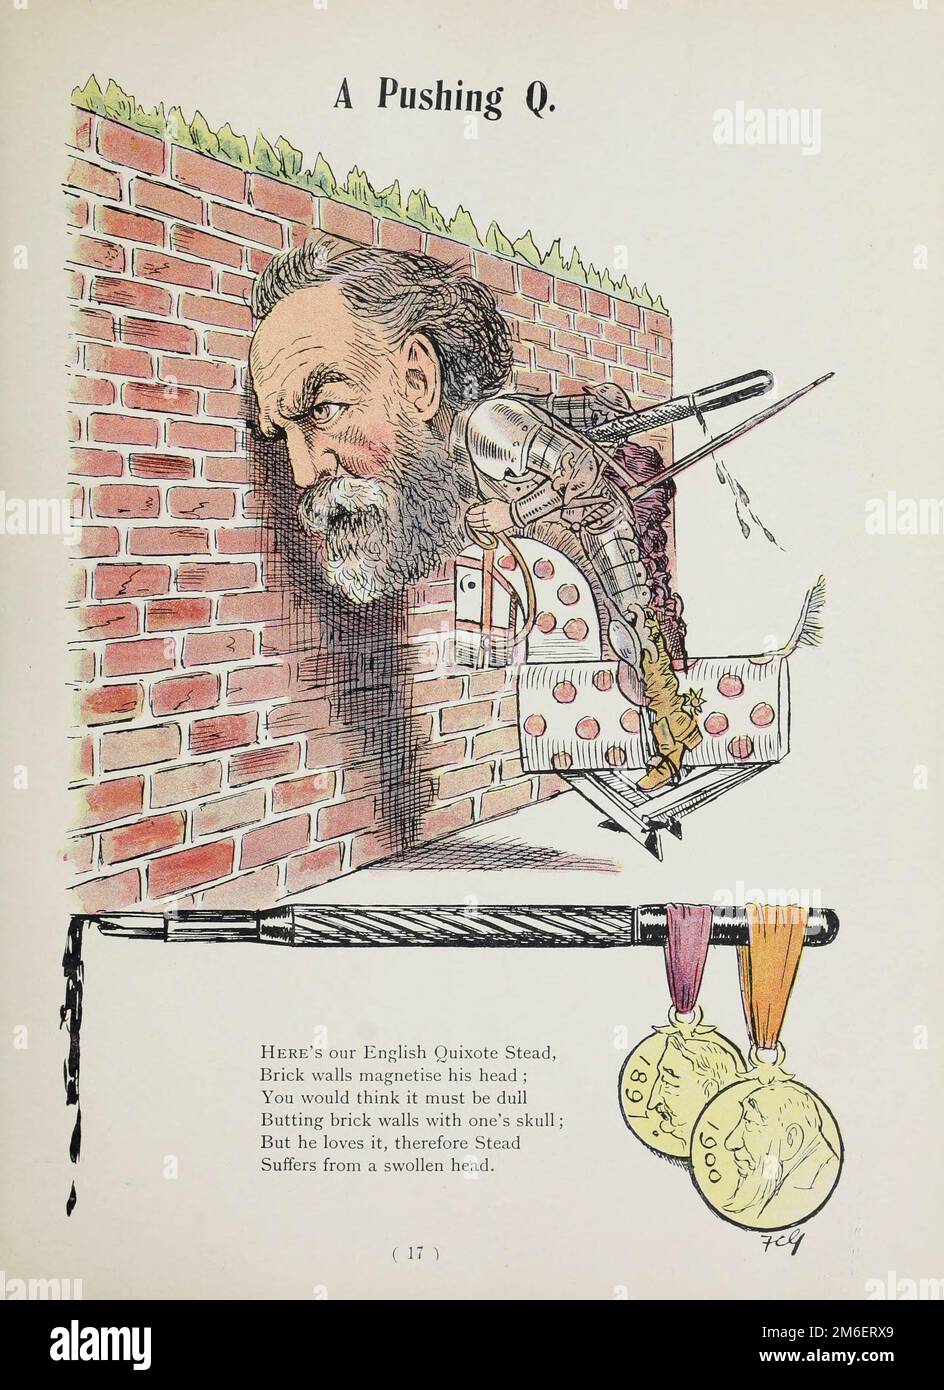 Ecco il nostro Quixote stead Brick Walls inglese che magnetizza la sua testa dal libro satirico Struwelpeter alfabeto di Harold Begbie, 1871-1929, illustrato da Francis Carruthers Gould, 1844-1925, pubblicato a Londra : G. Richards nel 1900 Foto Stock